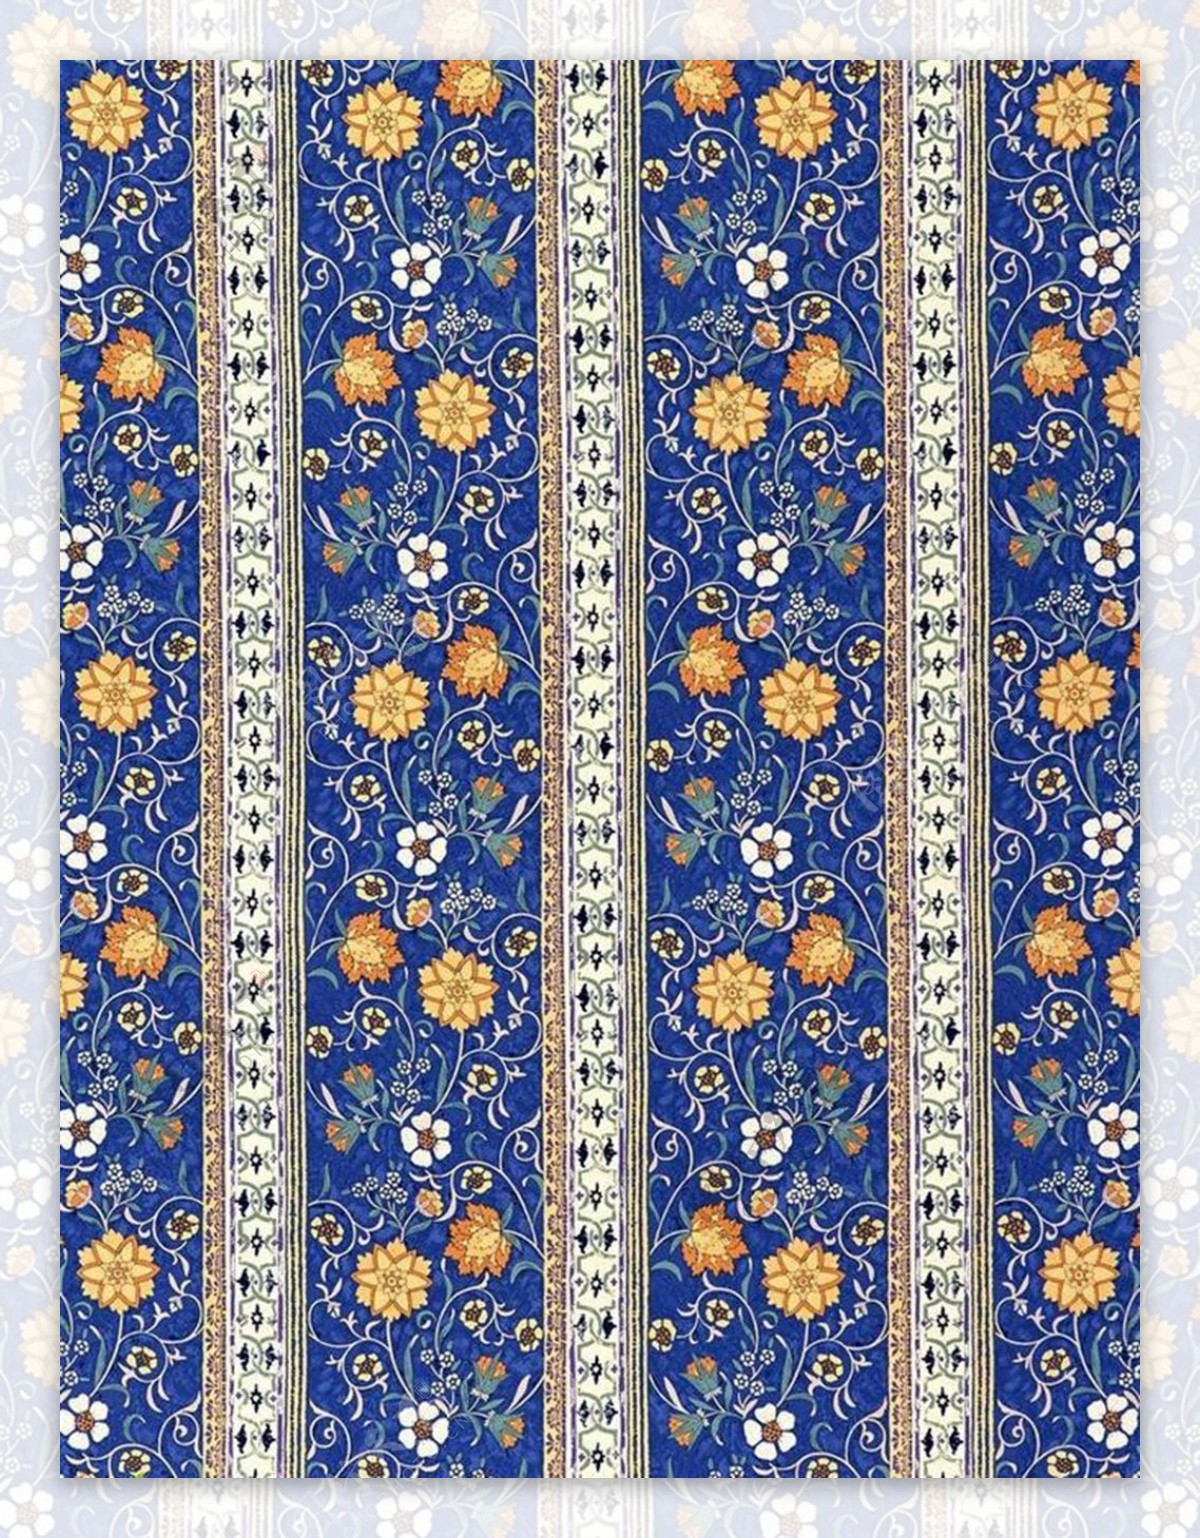 印染蓝色花卉布纹背景设计素材